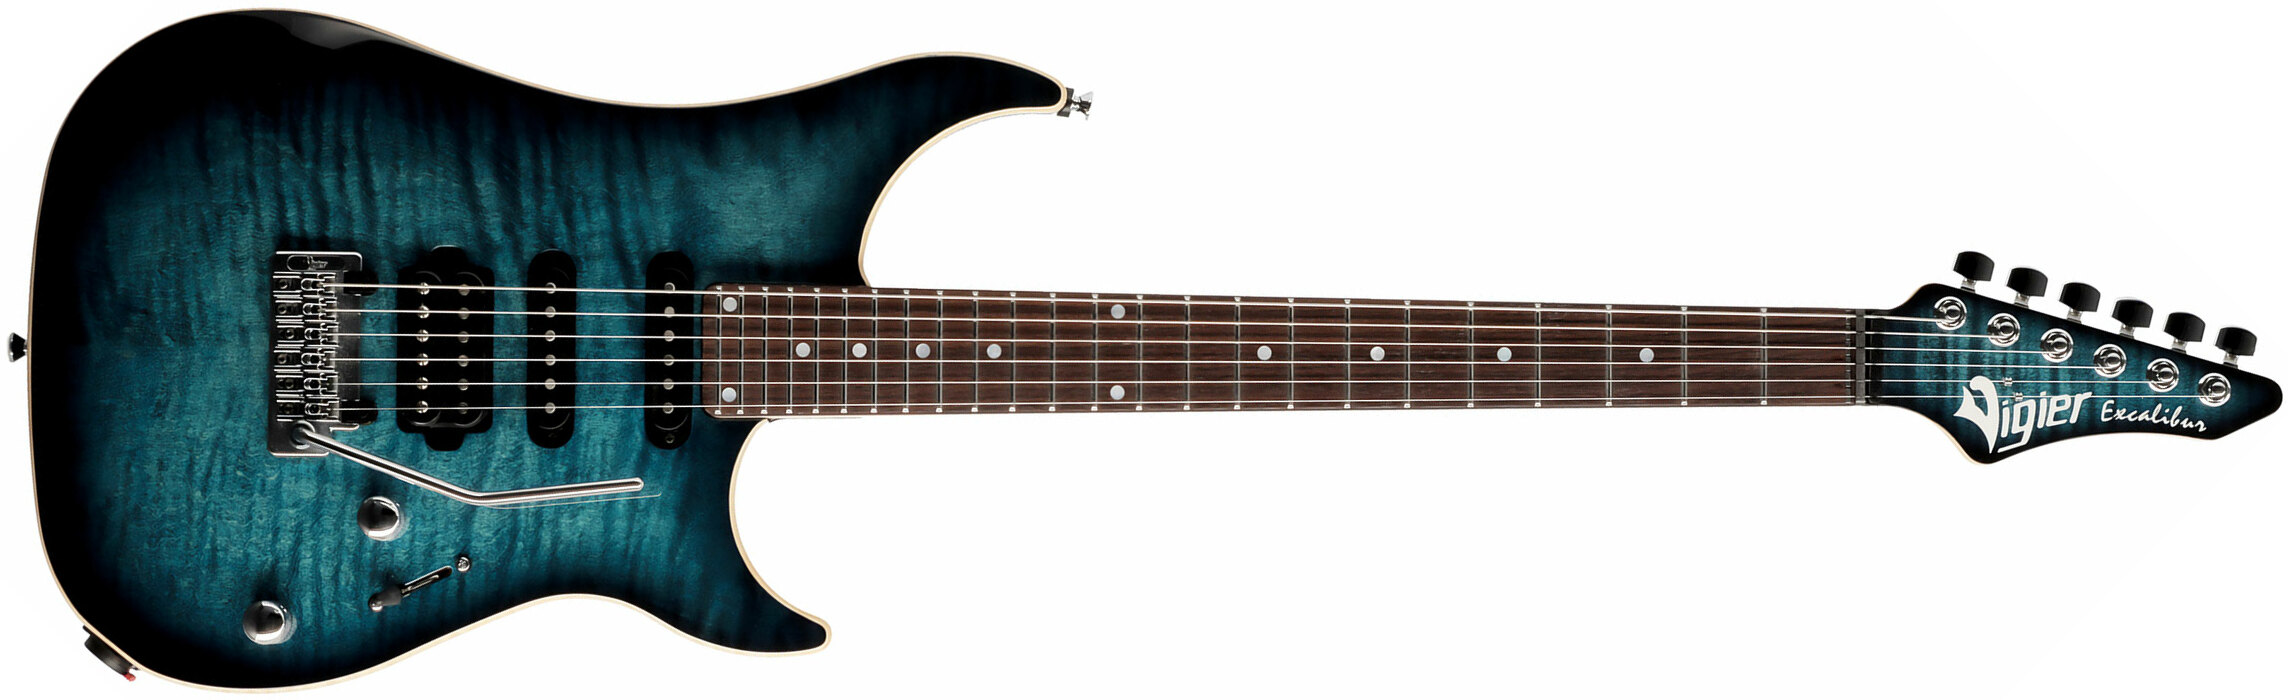 Vigier Excalibur Ultra Blues Hss Trem Rw - Mysterious Blue - Guitarra eléctrica con forma de str. - Main picture